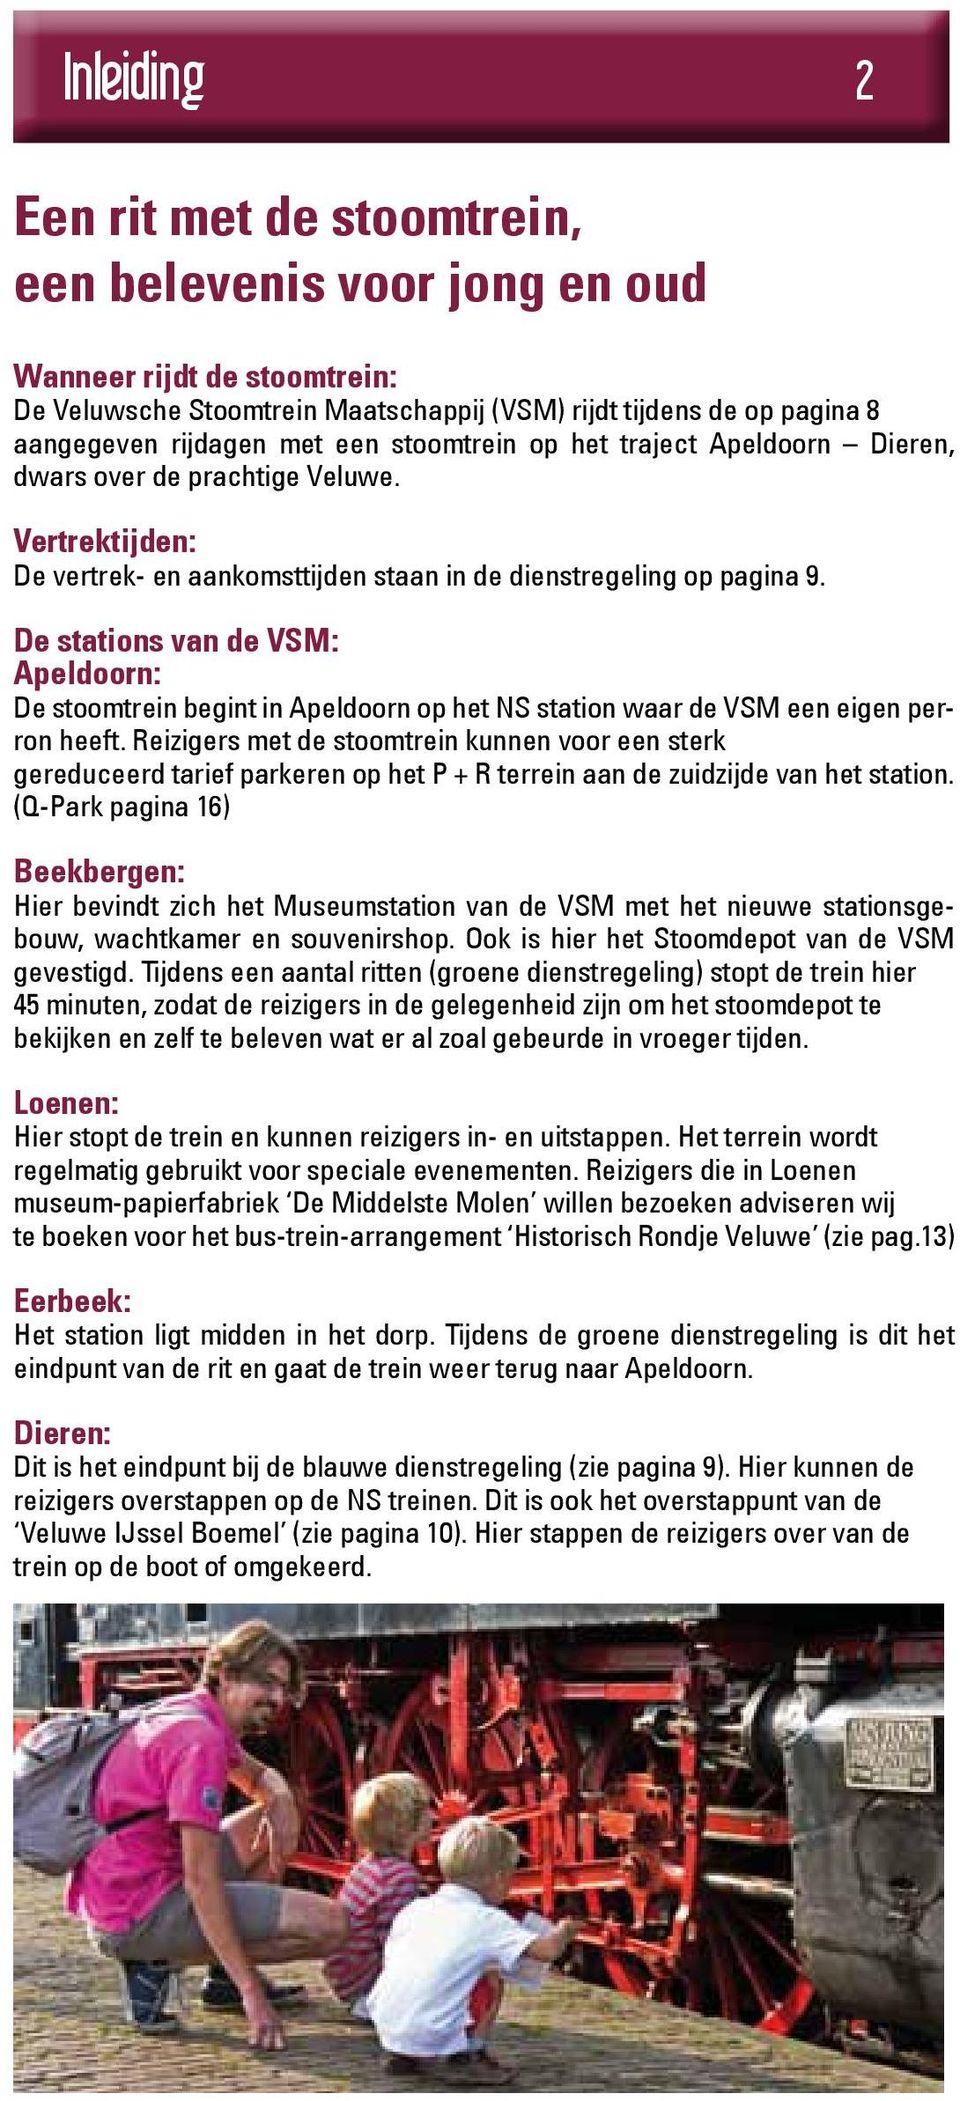 De stations van de VSM: Apeldoorn: De stoomtrein begint in Apeldoorn op het NS station waar de VSM een eigen perron heeft.